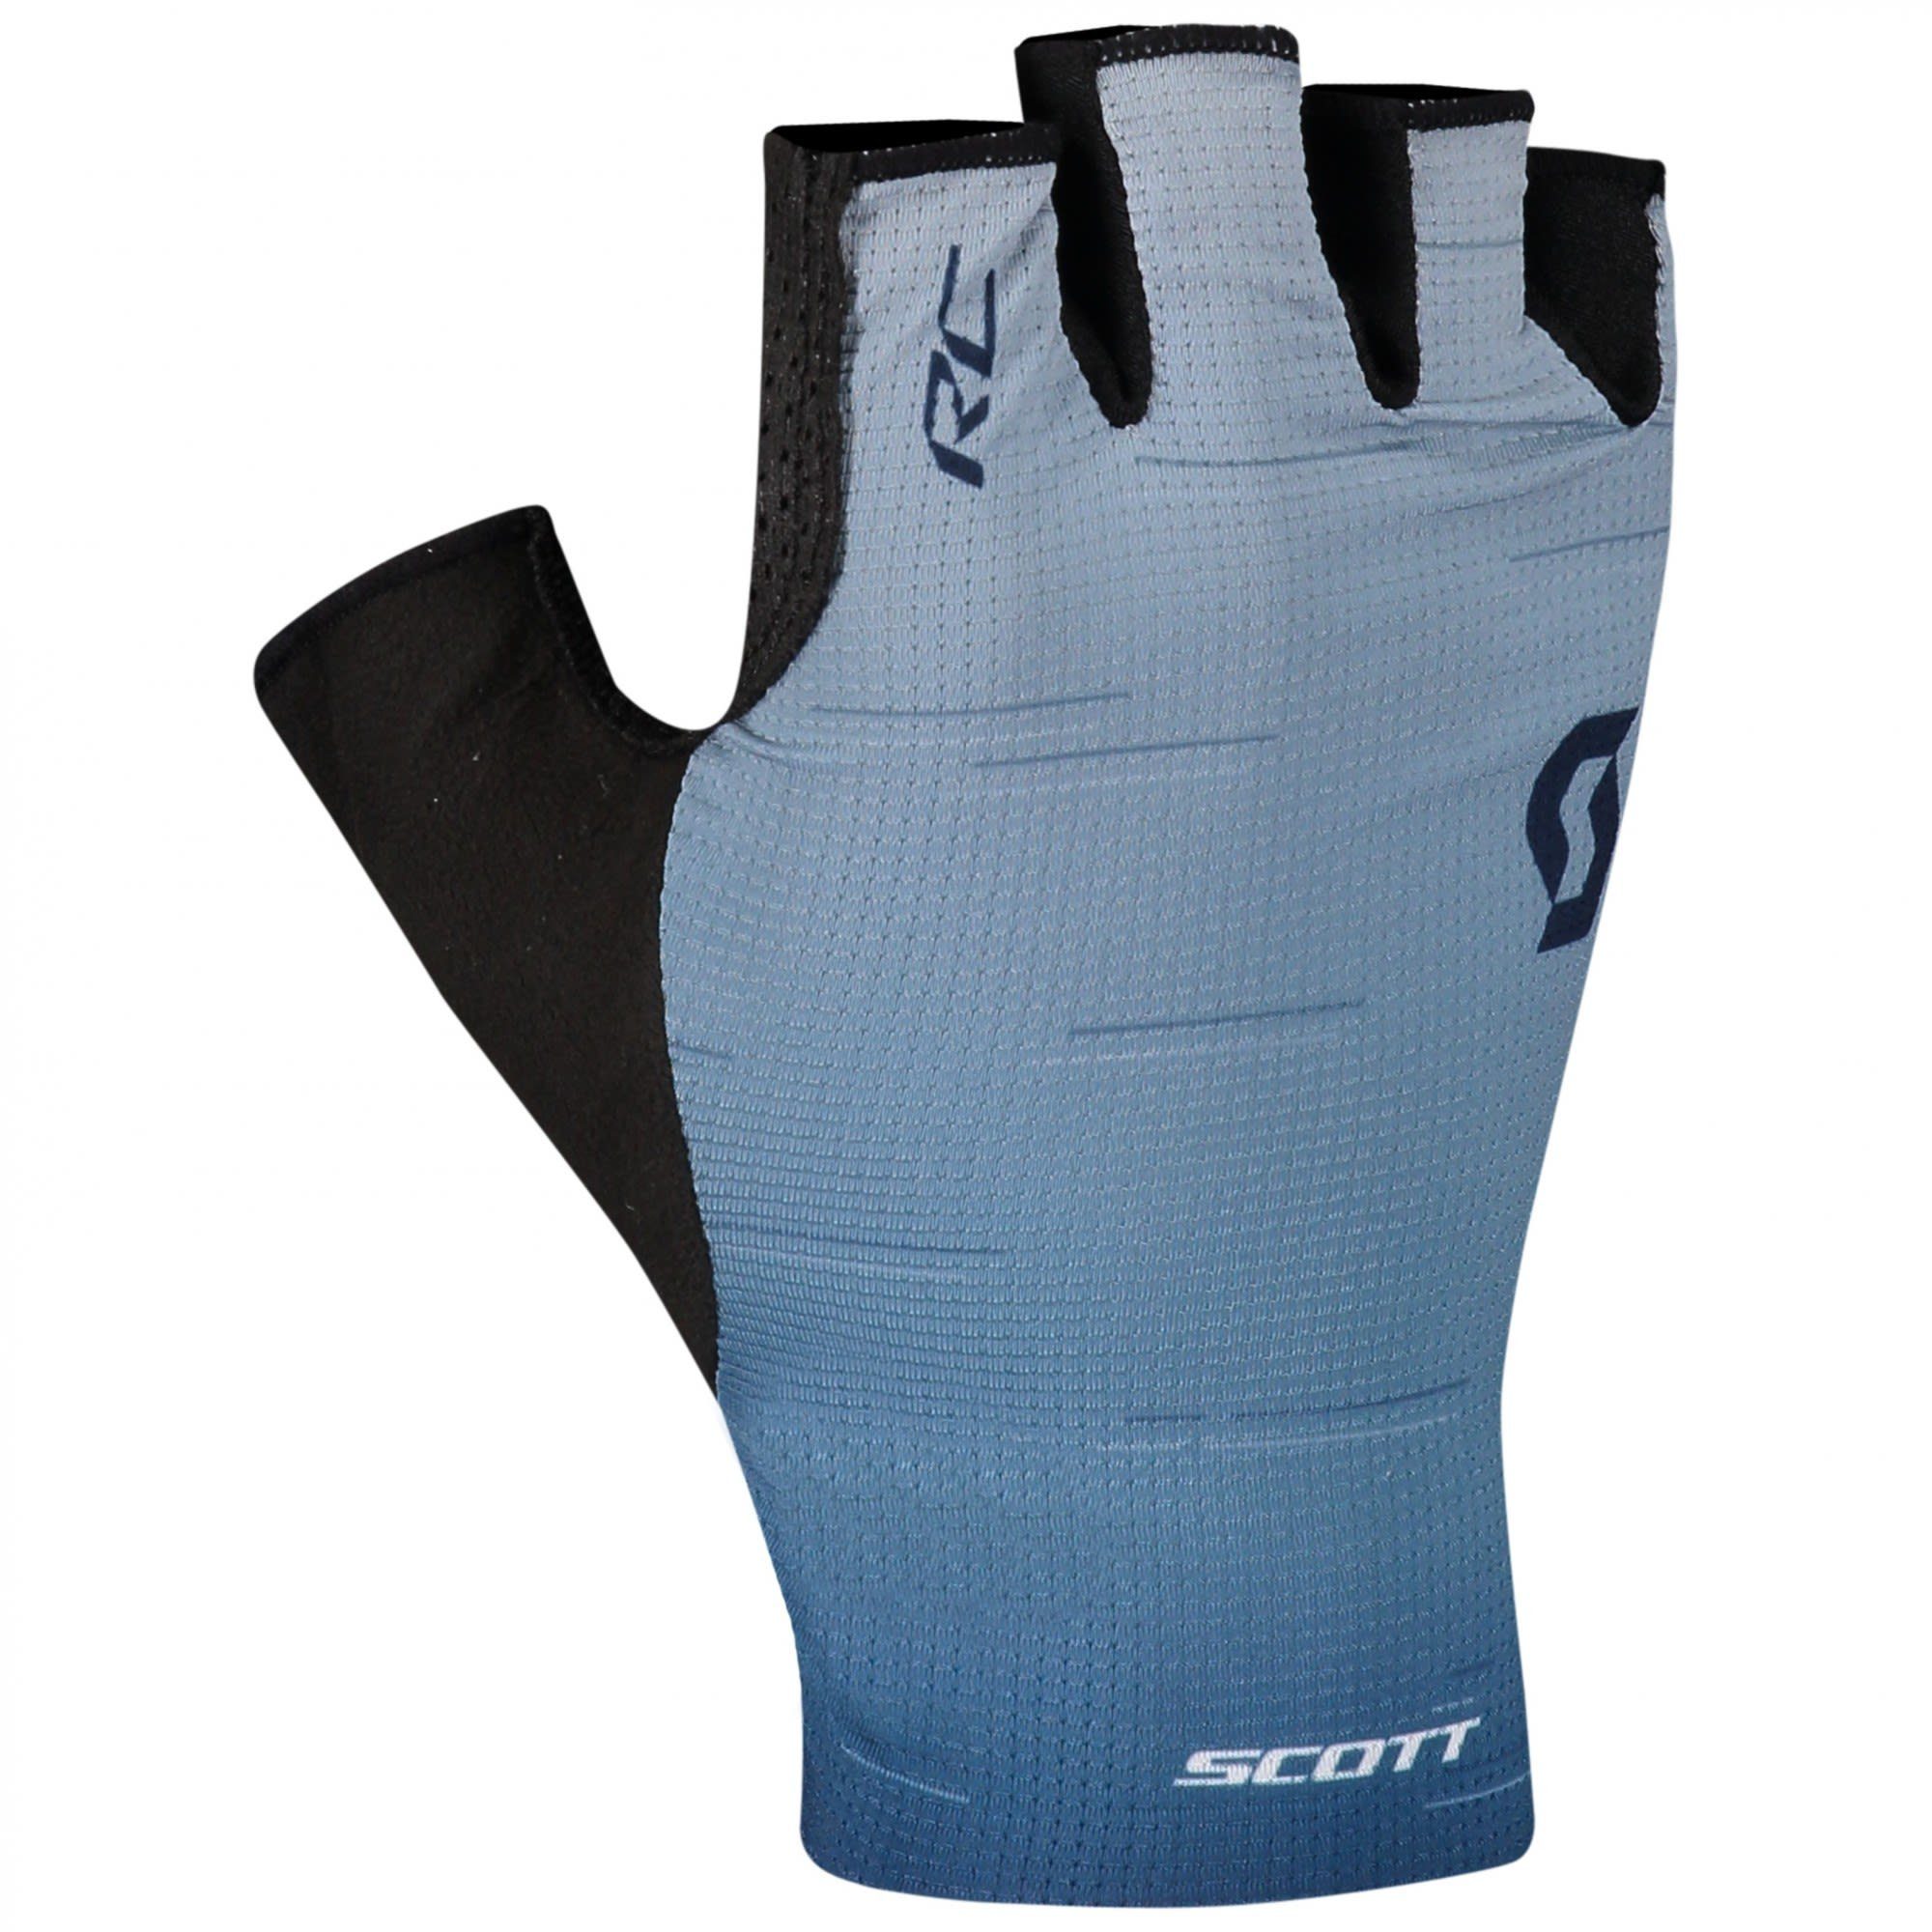 Rc Sf Fleecehandschuhe Blue Blue Glove Glace - Midnight (vorgängermodell) Scott Pro Scott